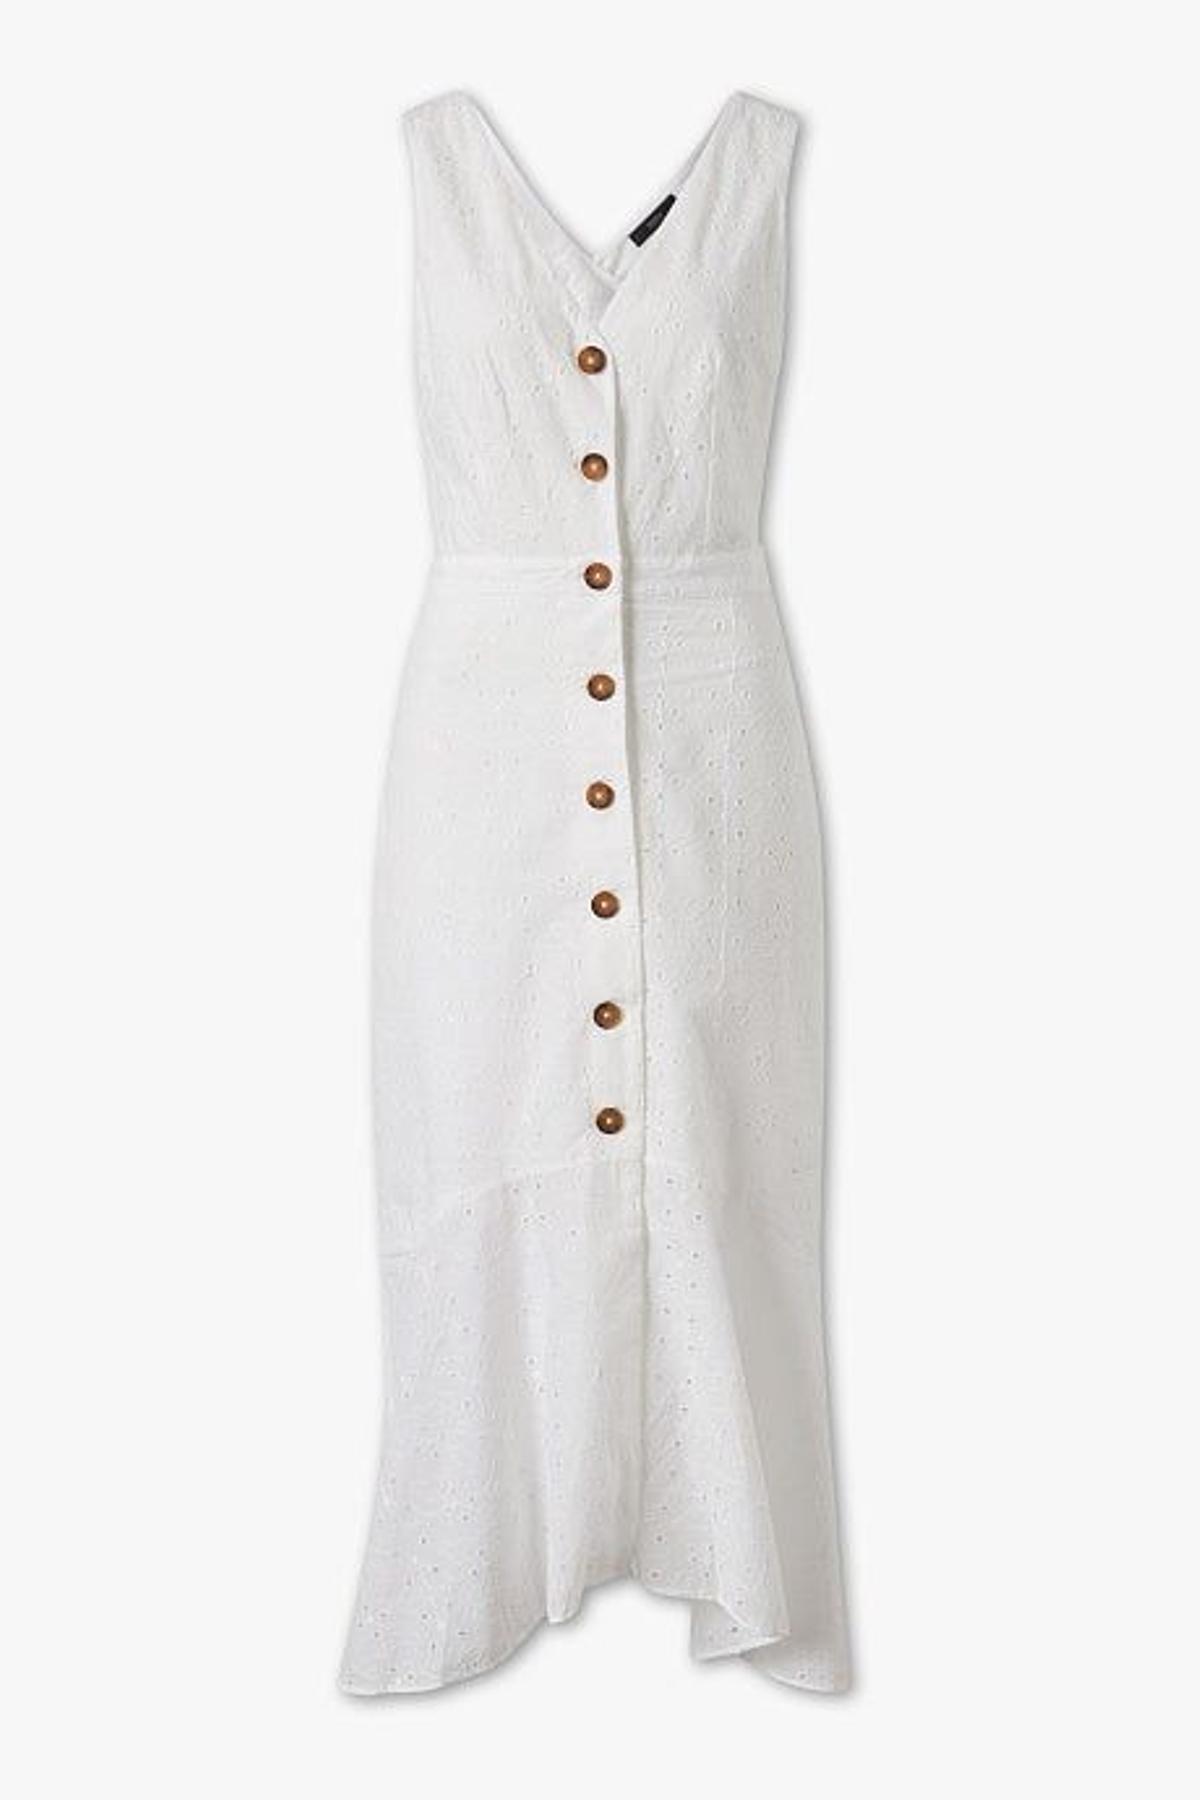 Vestido calado blanco (Precio: 39,90 euros)